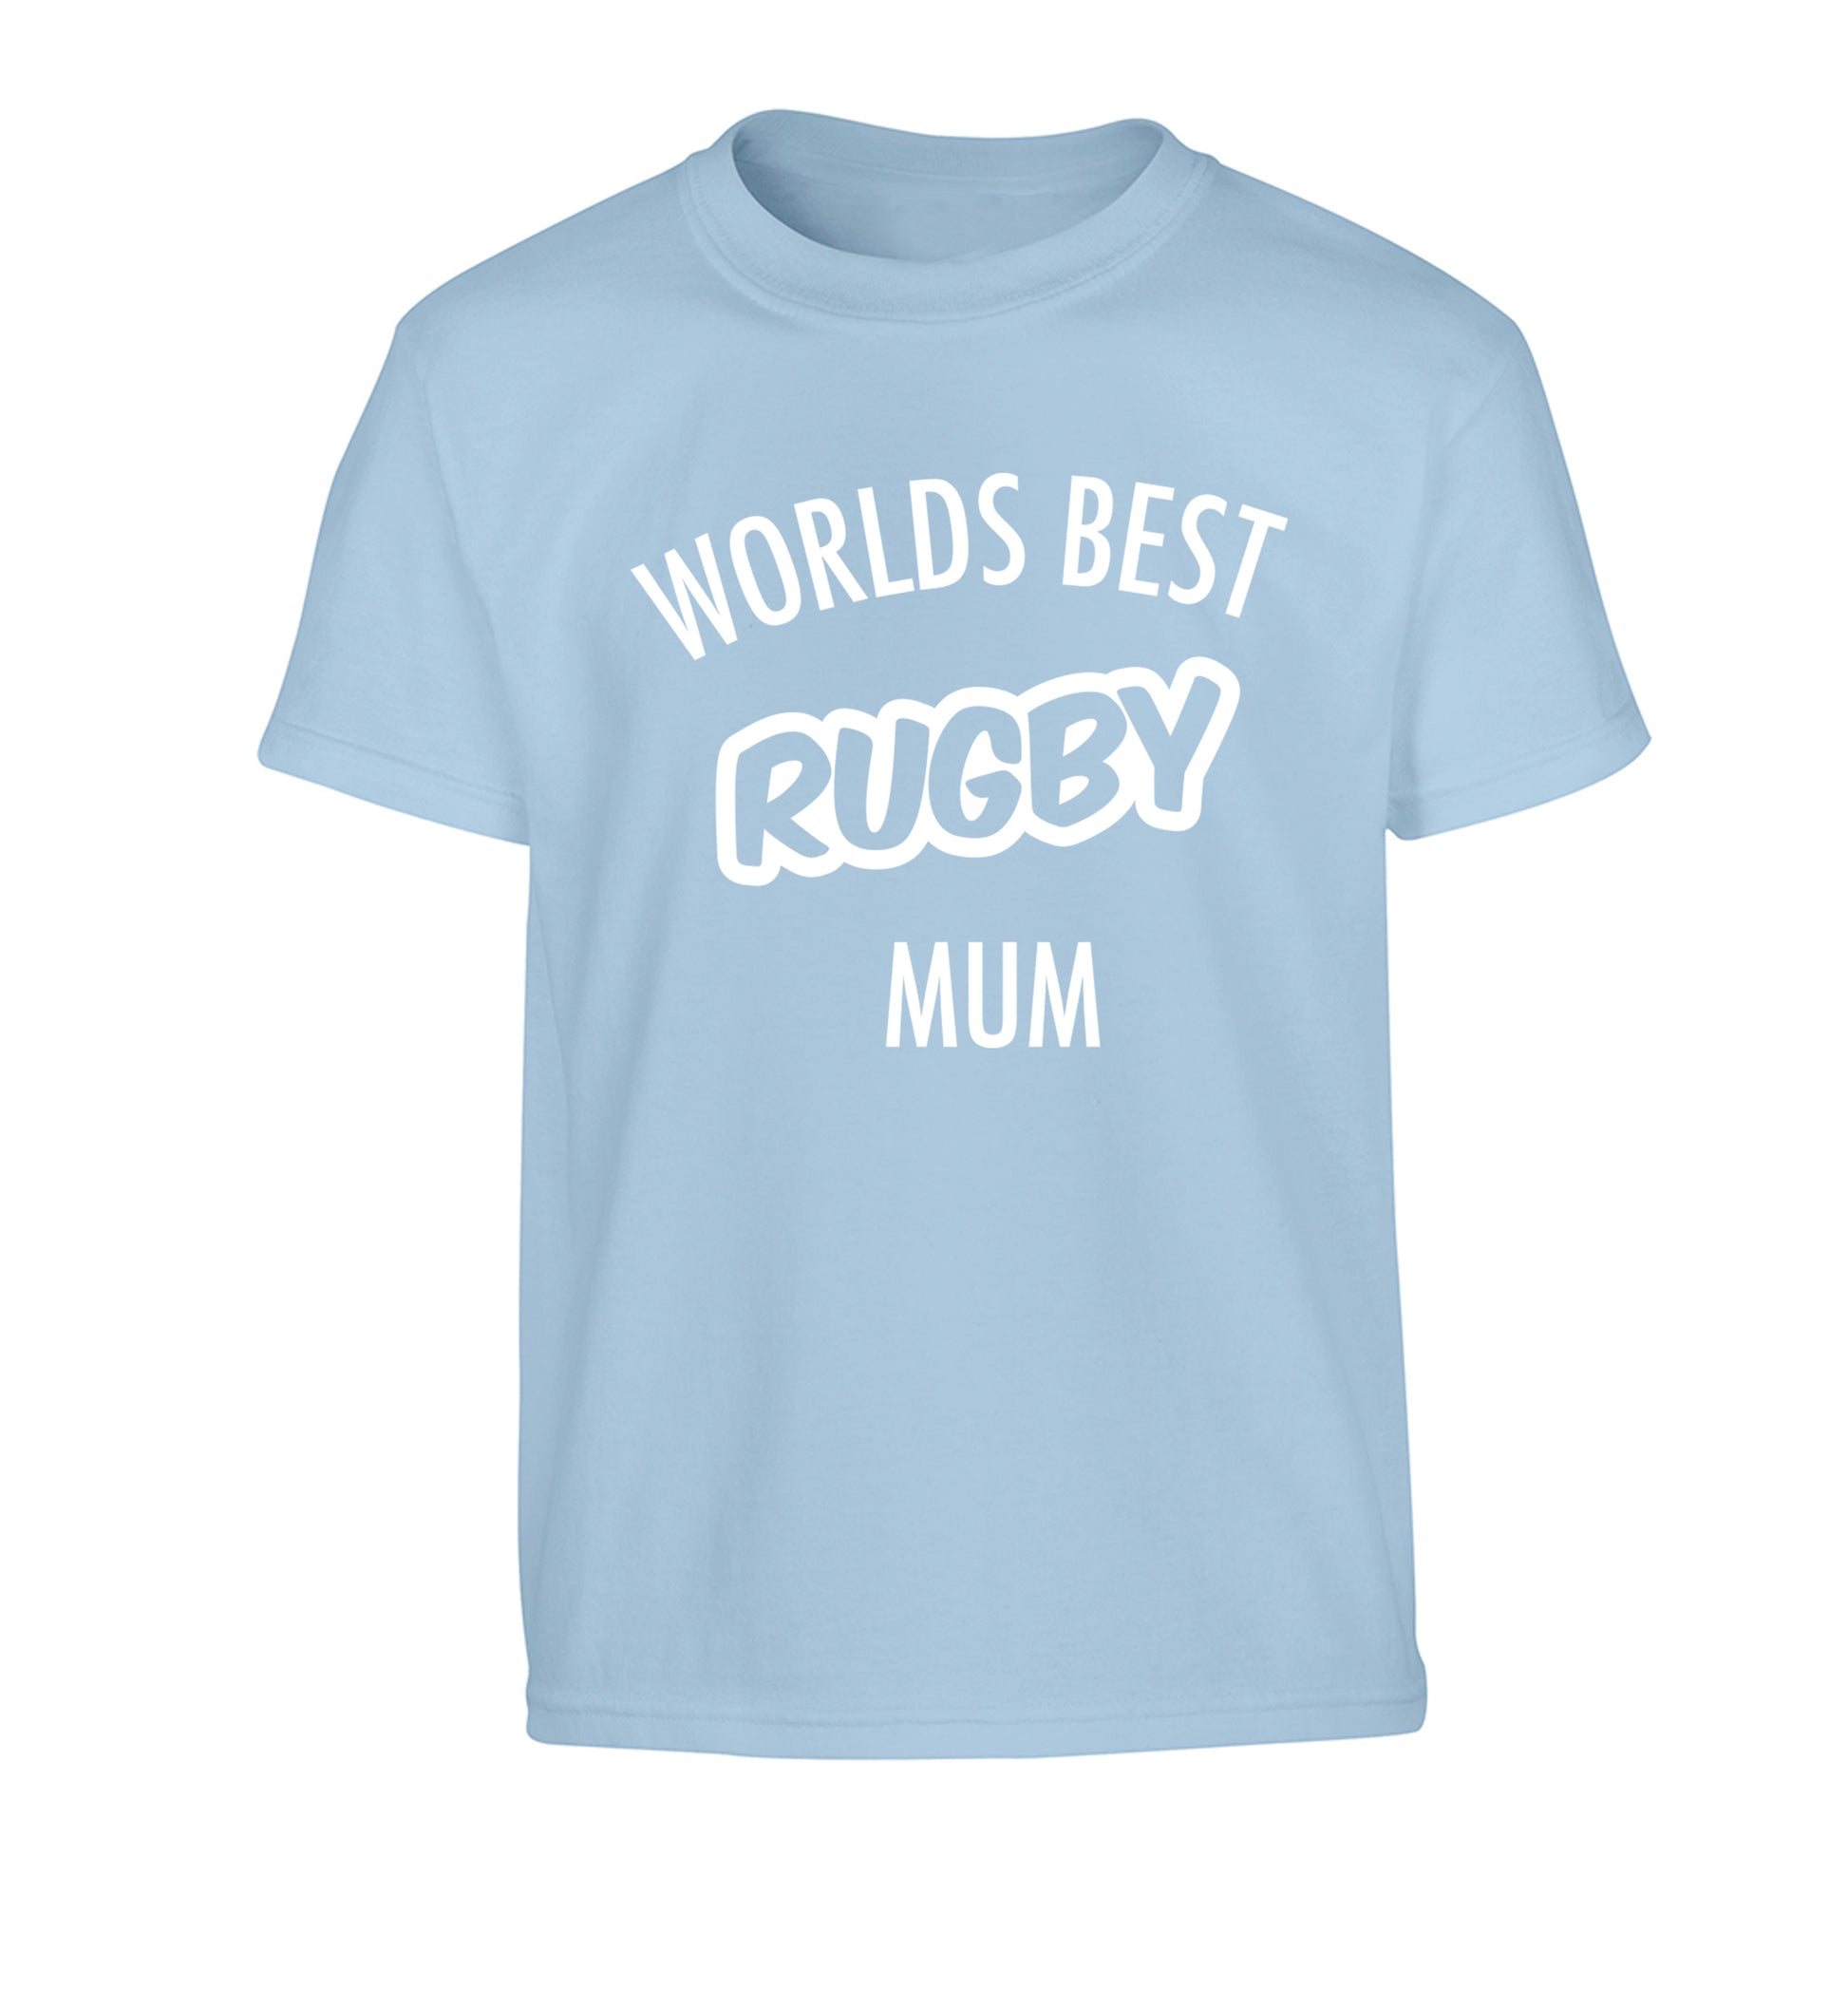 Worlds best rugby mum Children's light blue Tshirt 12-13 Years